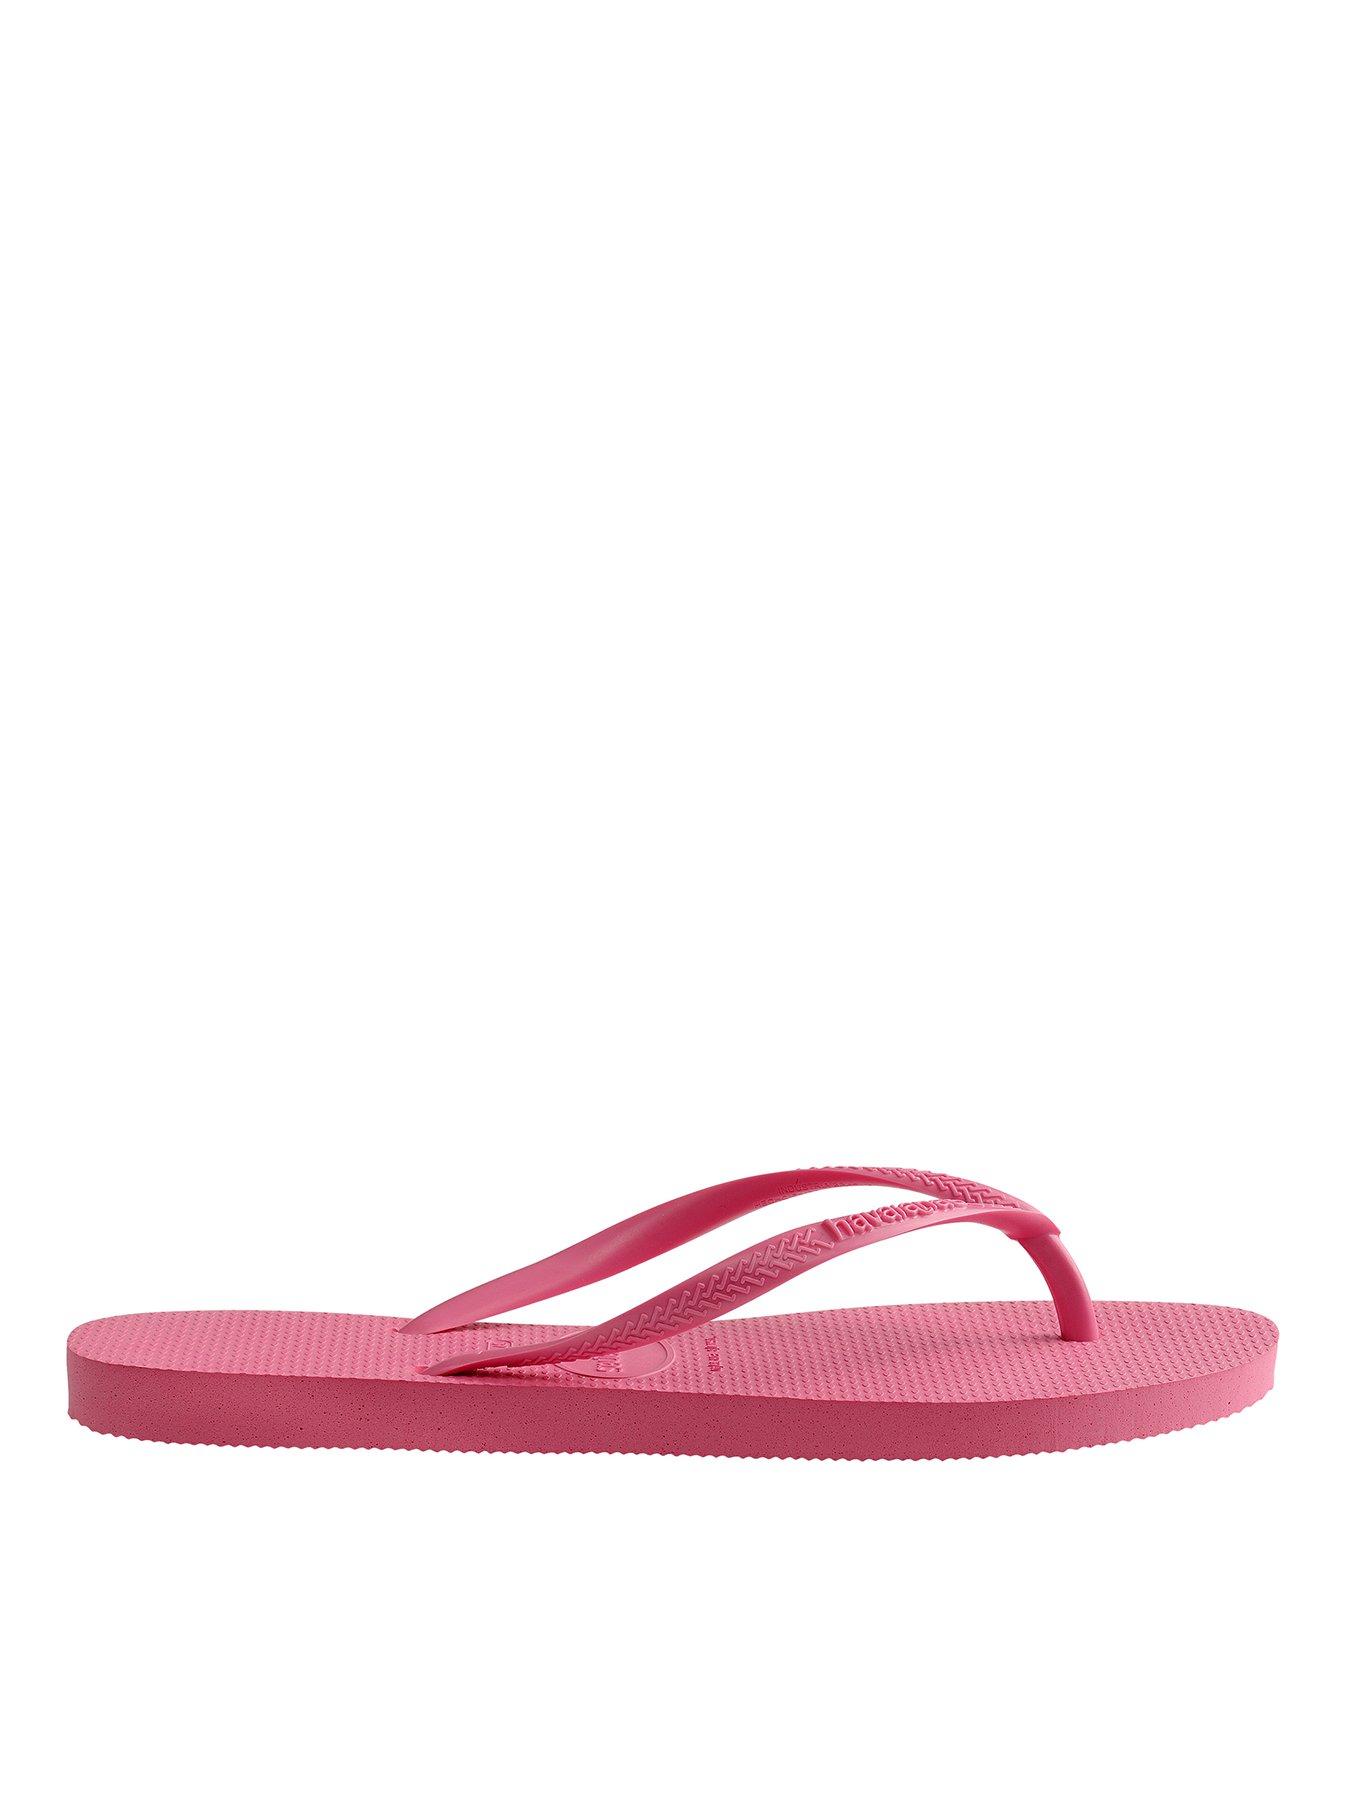 Havaianas Hav. Slim Flip Flops - Ciber Pink | very.co.uk